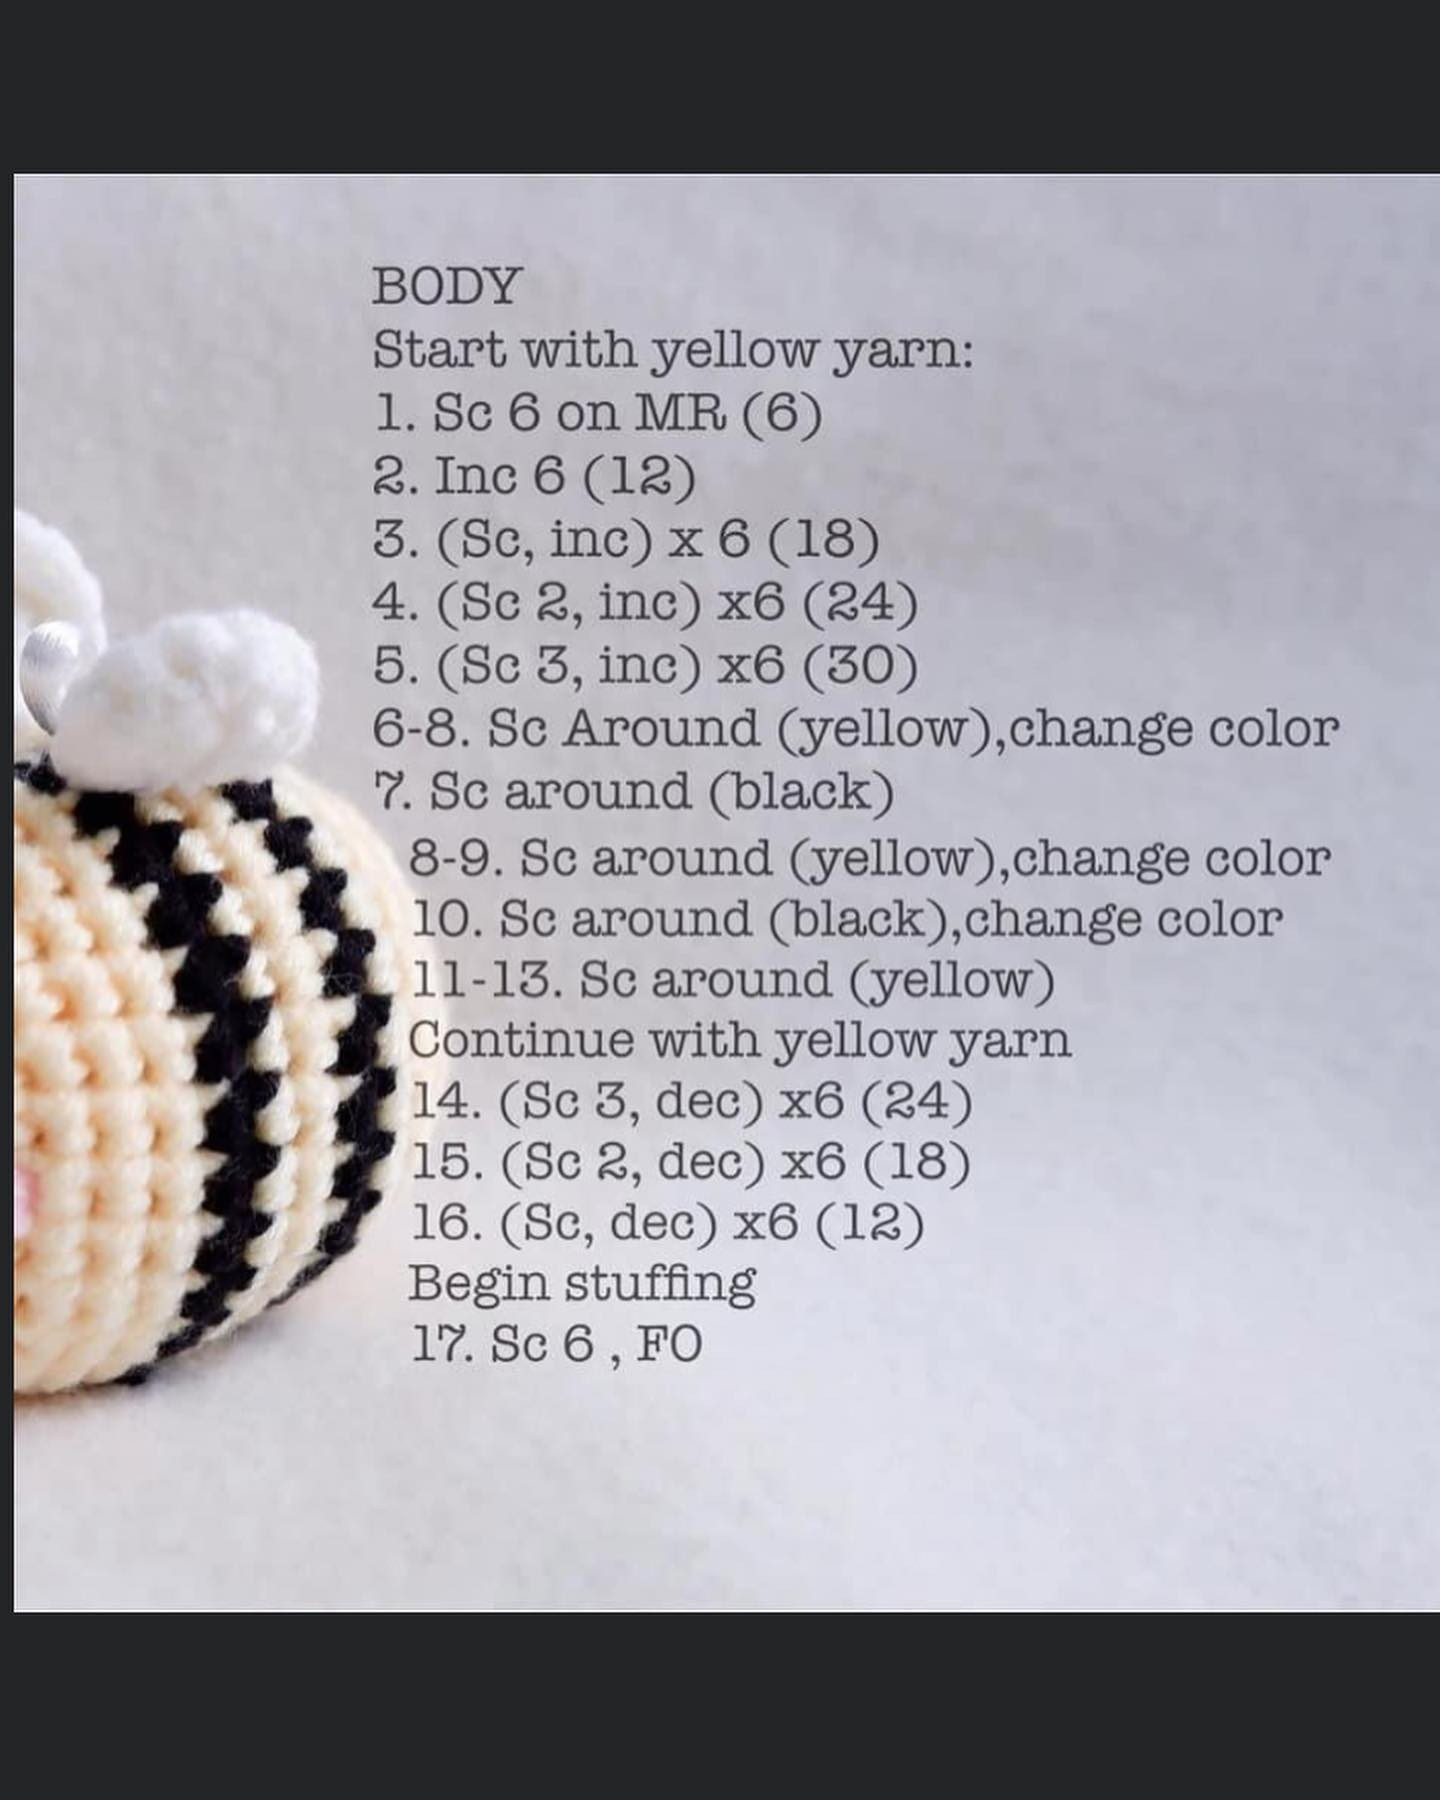 White winged bee crochet pattern